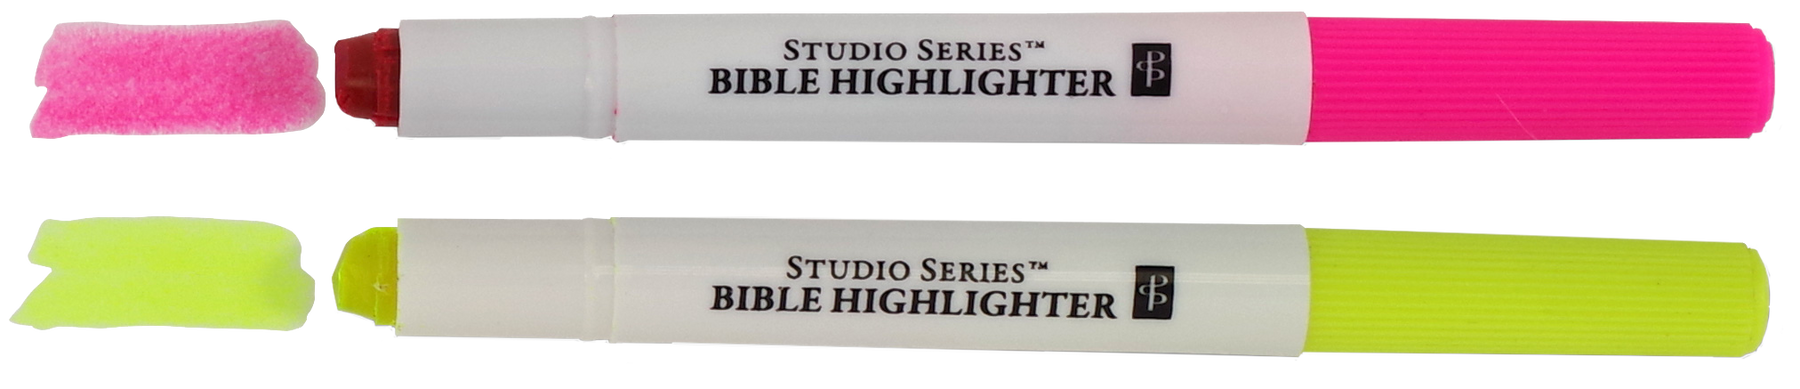 Christian Art Gifts, Bible Highlighter Pencils Set, 1 Each of 6